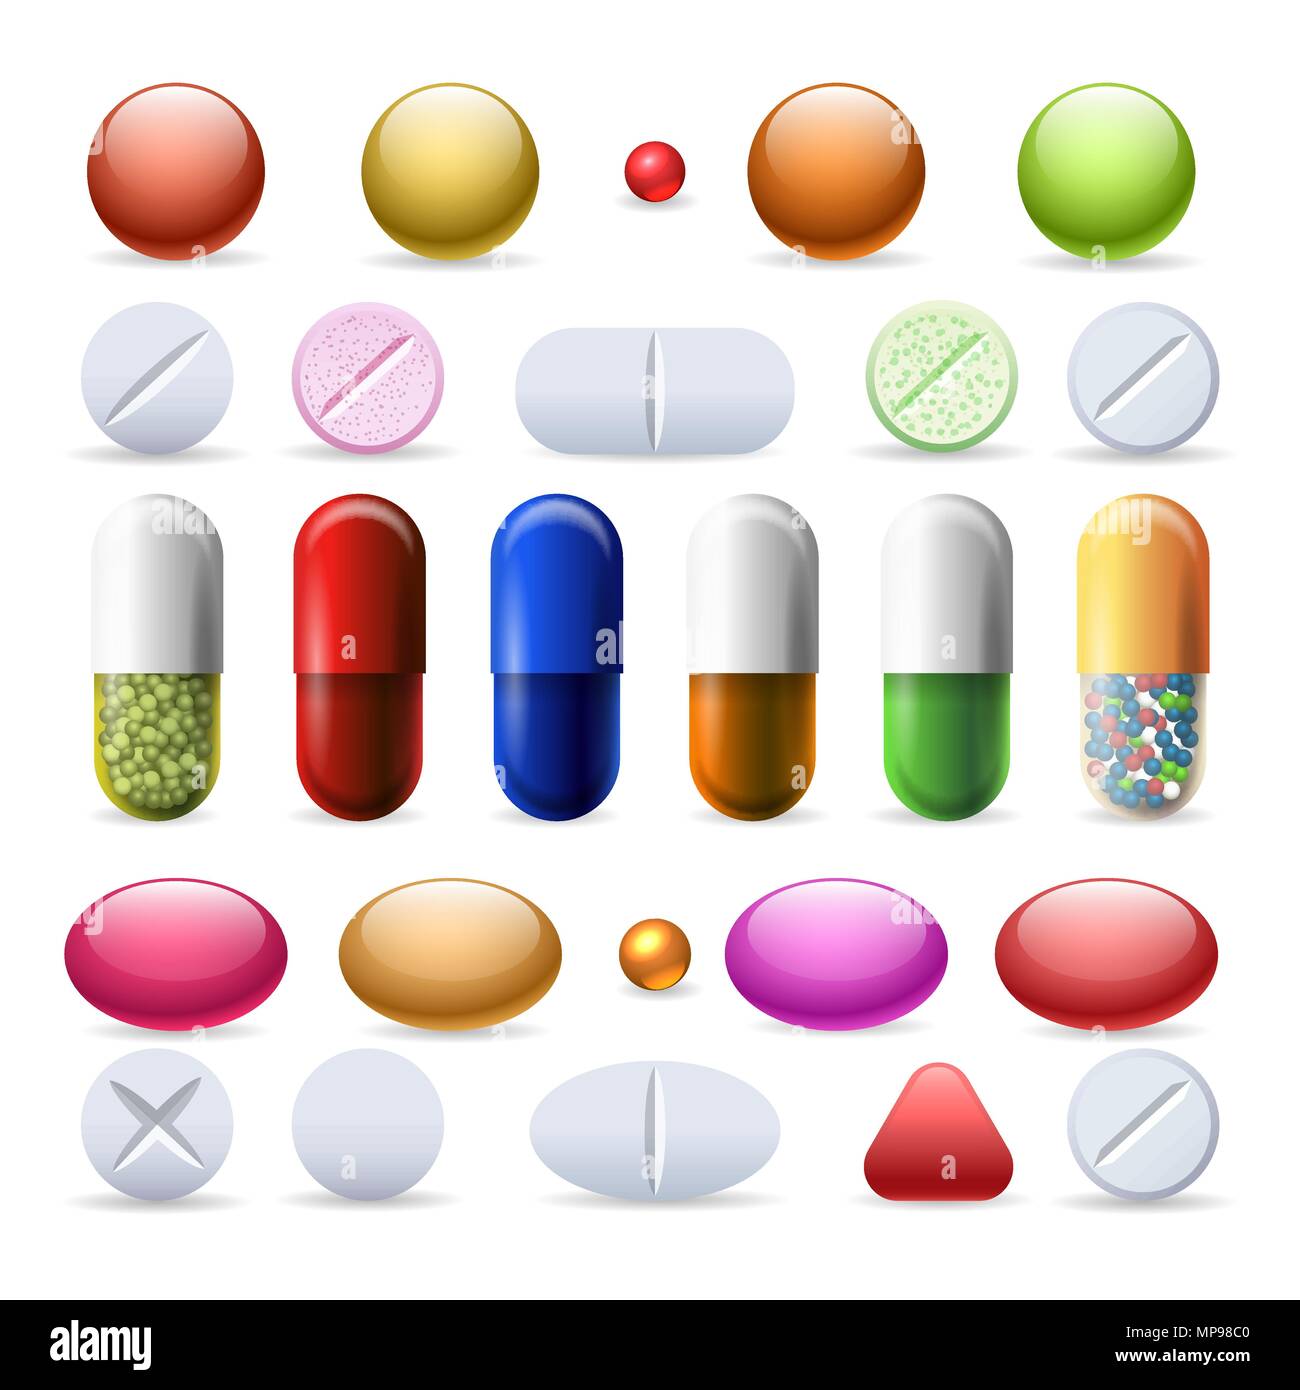 Pille und Tabletten. Medizin und Kapseln, Tabletten und Vitamin Pille  Vektor auf weißem Hintergrund Stock-Vektorgrafik - Alamy